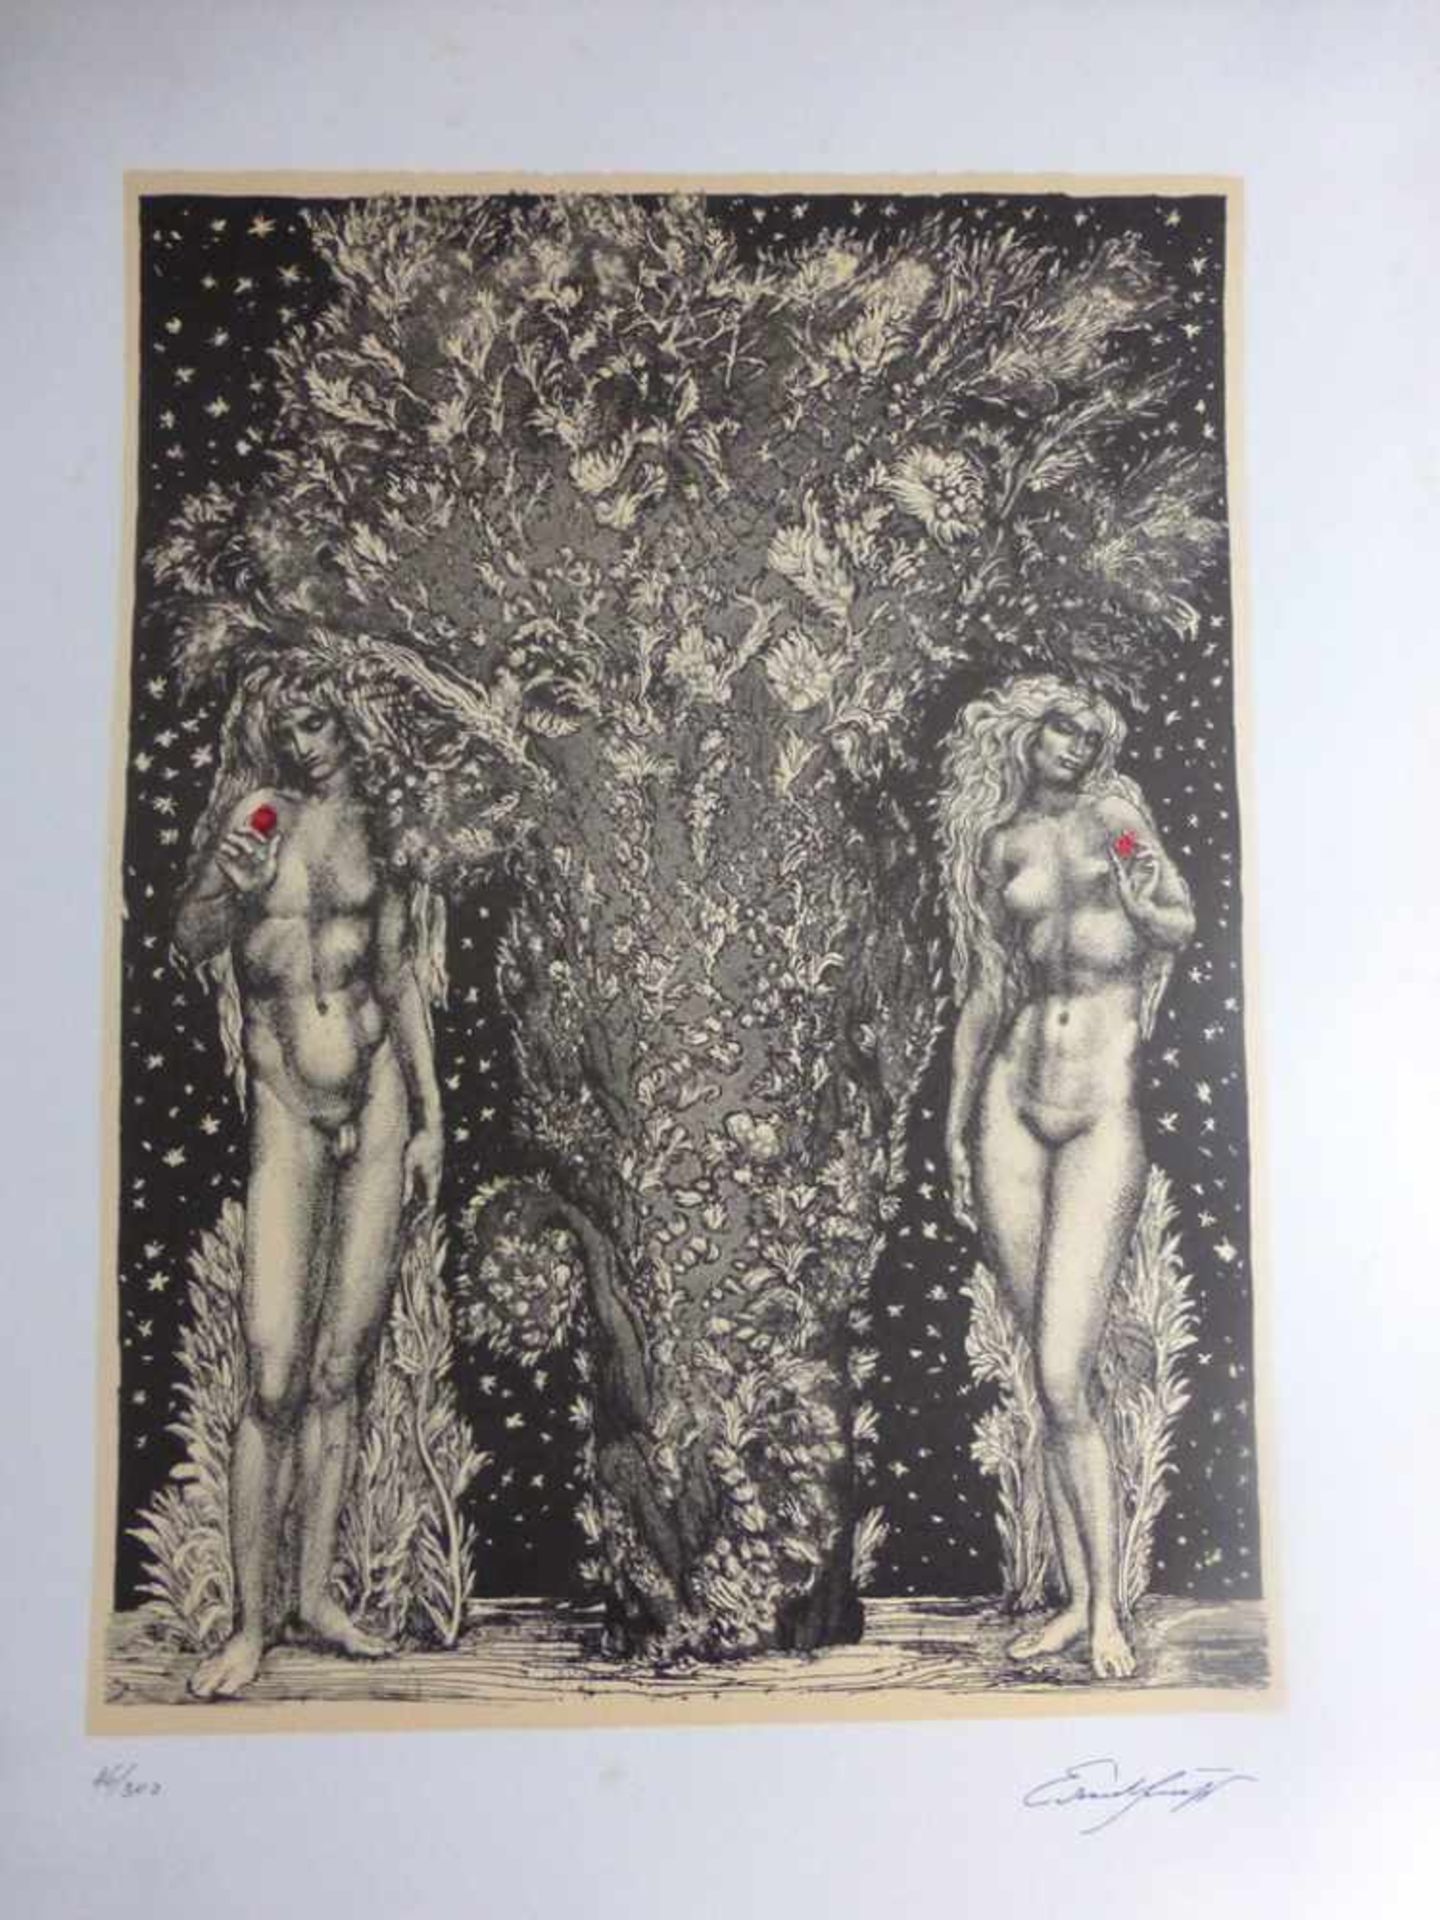 Fuchs, Ernst (1930 - 2015 Wien), Grafik "Adam und Eva", num. 46/300, Stempelsignatur, 57cmx 41,